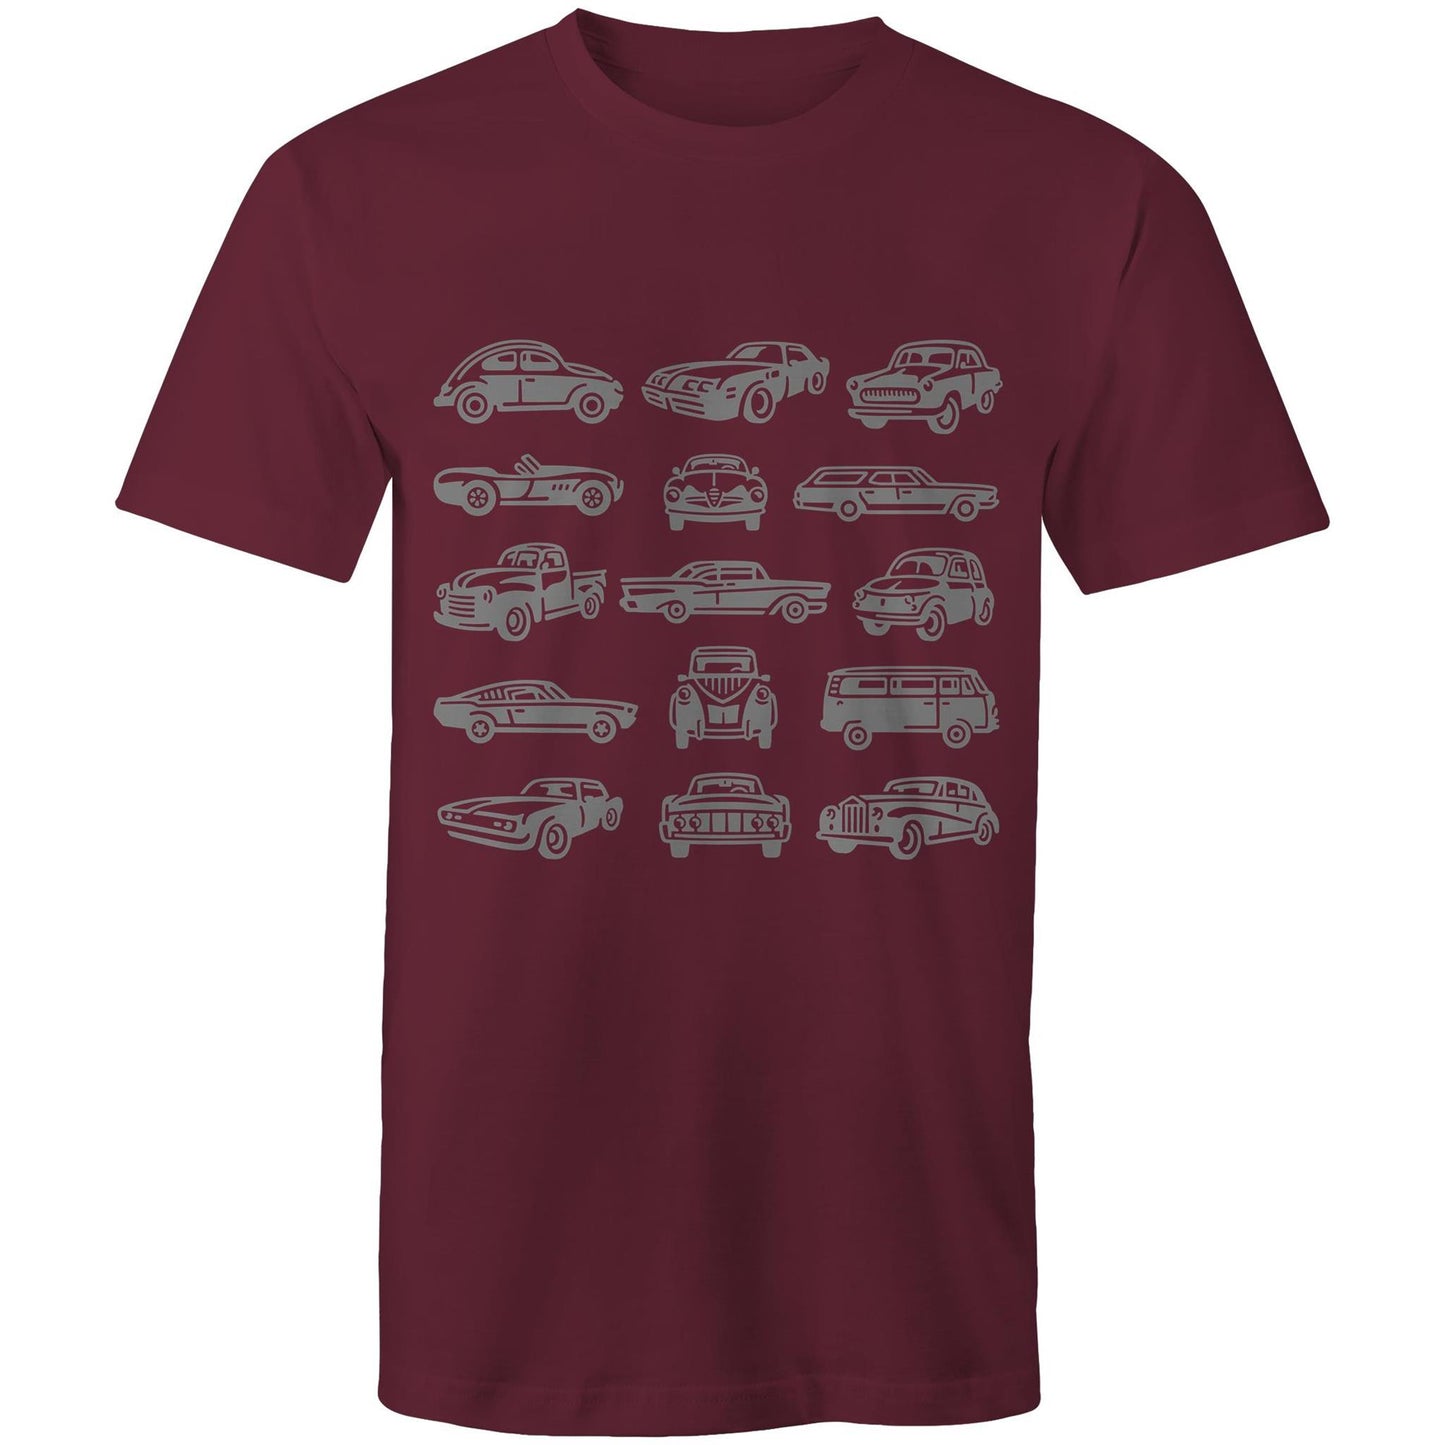 Vintage Cars - Mens T-Shirt Burgundy